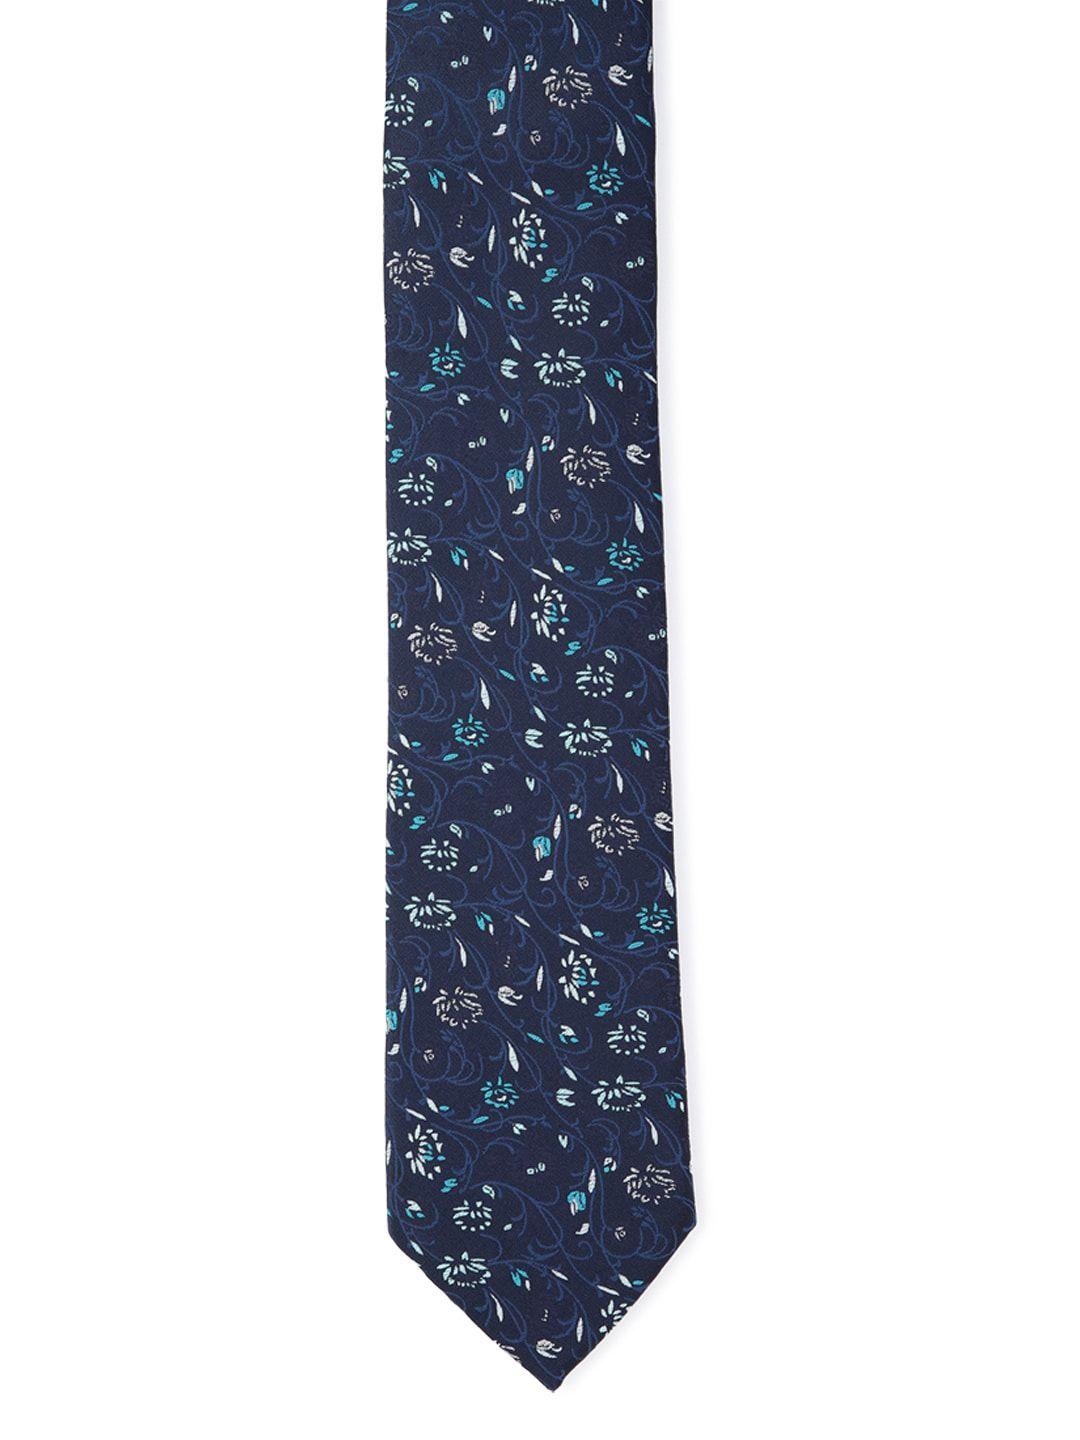 louis philippe men navy blue printed skinny tie